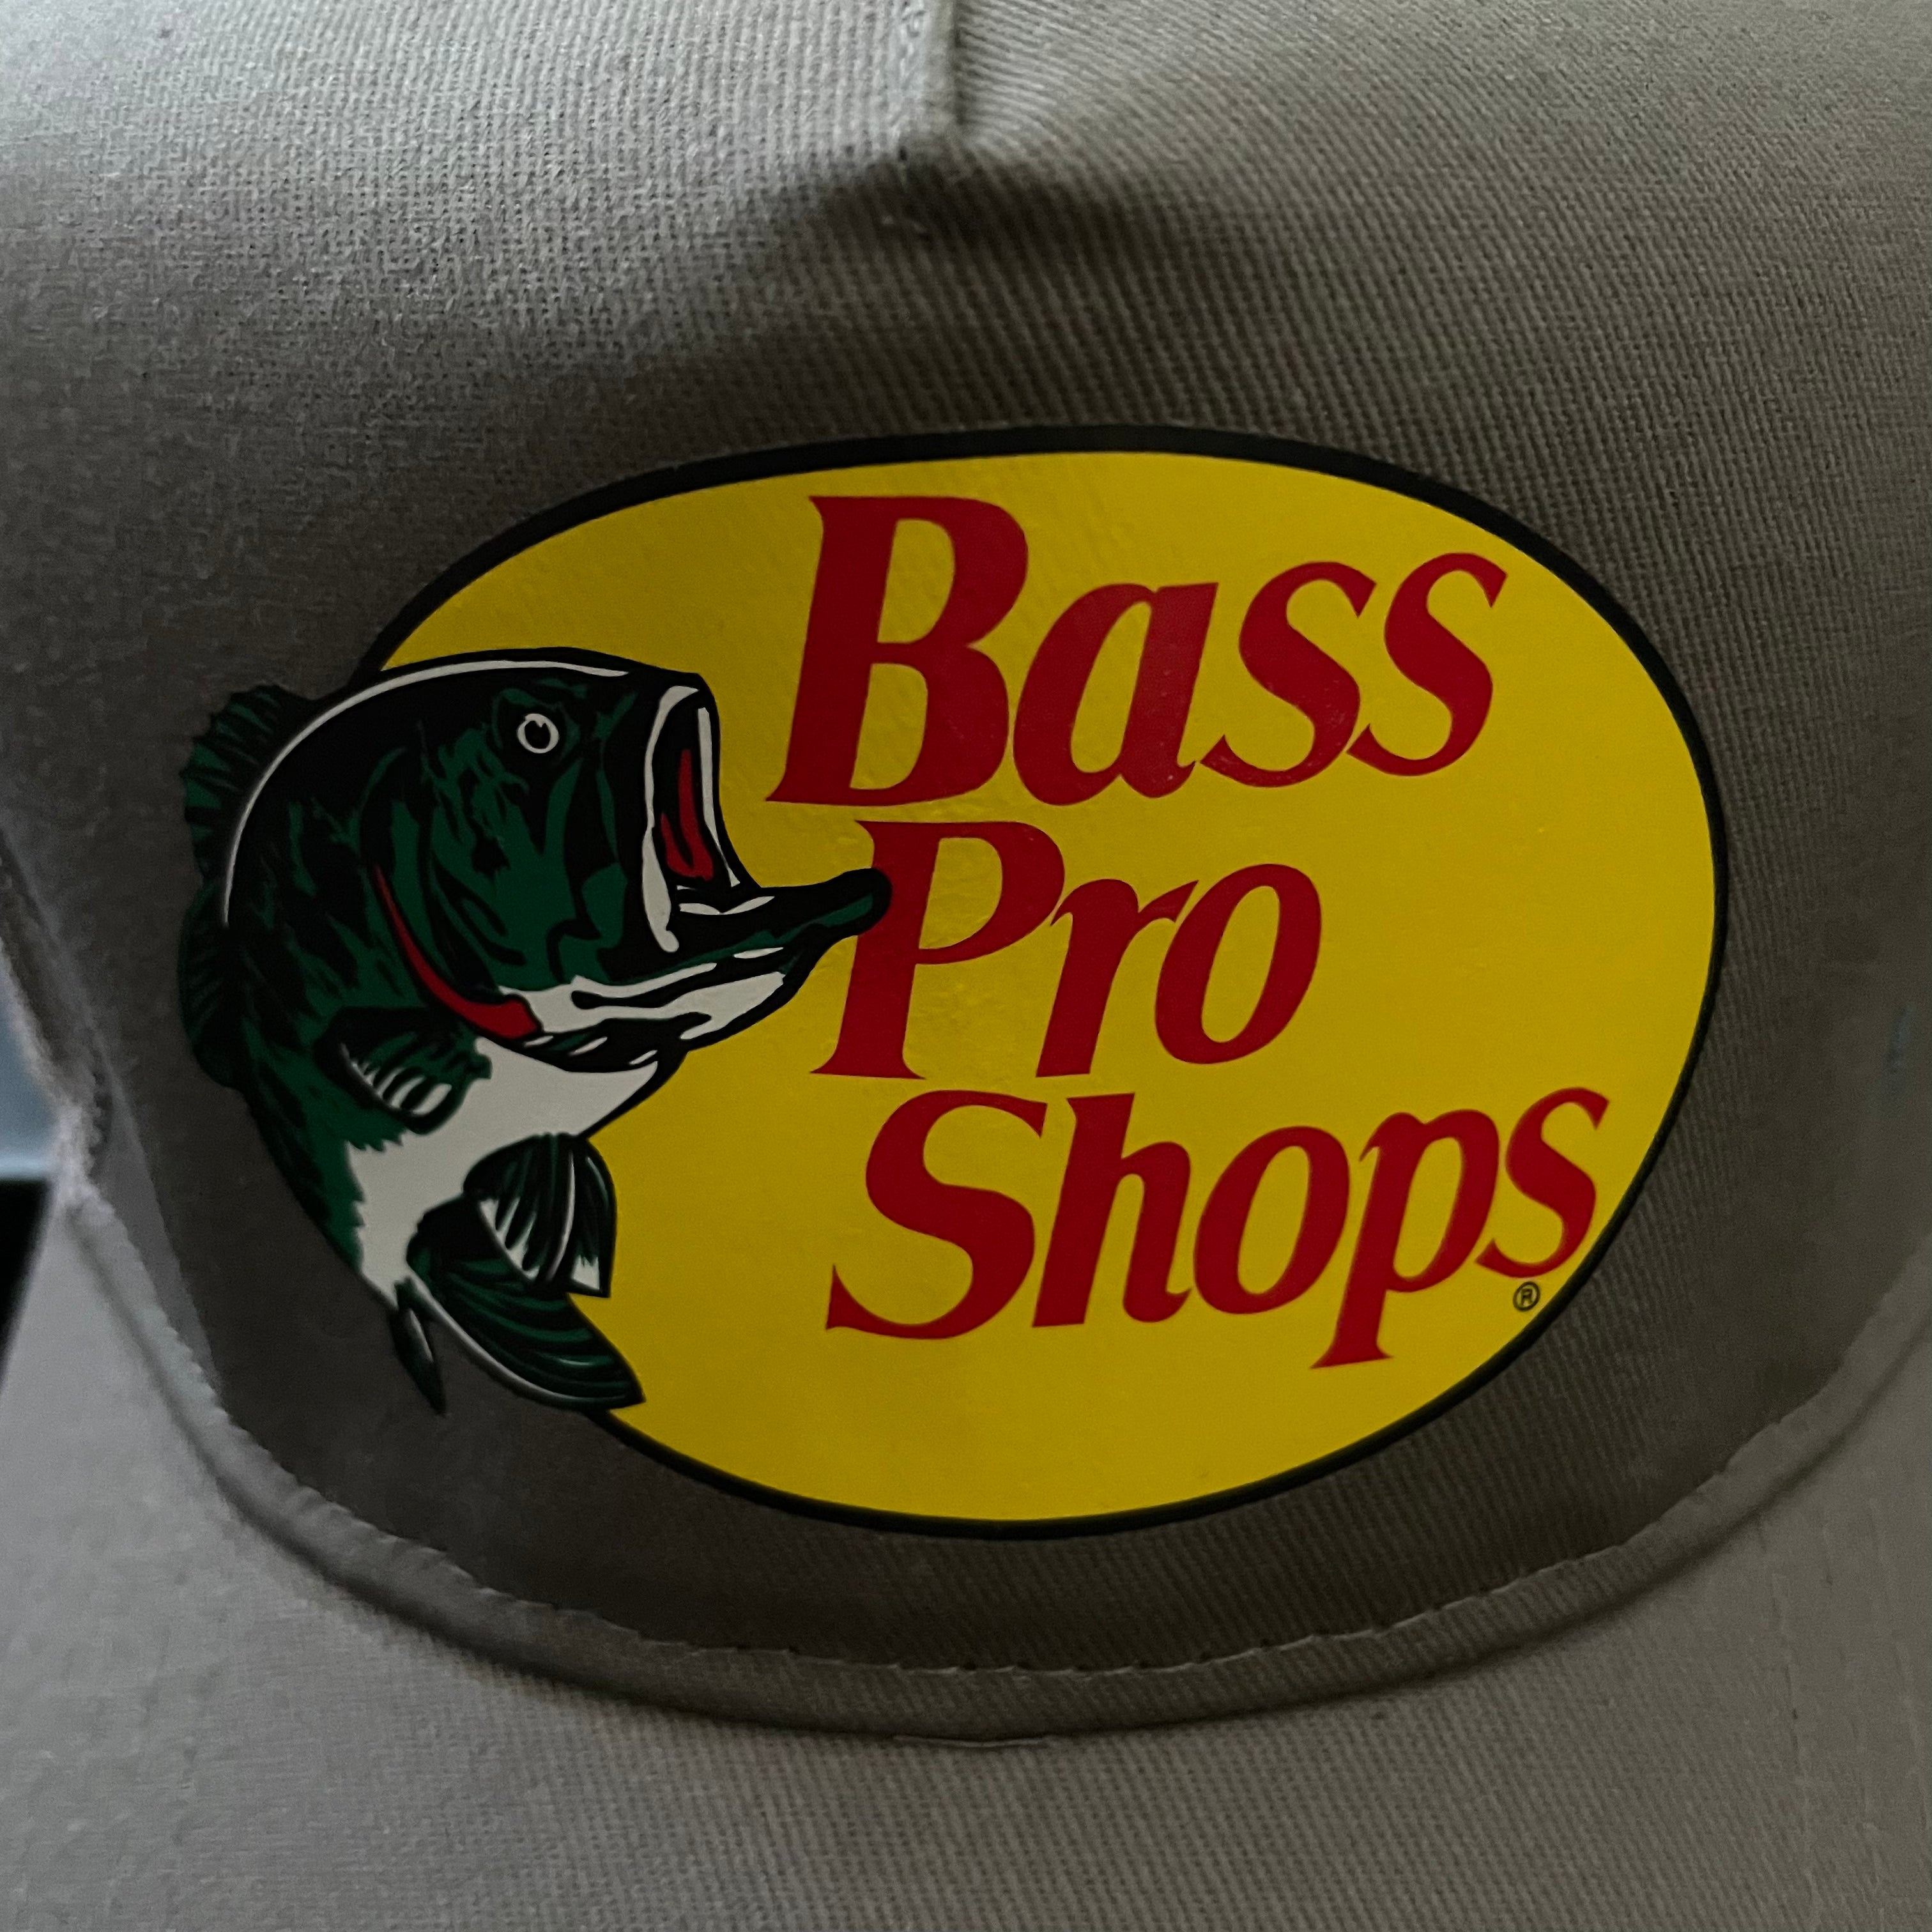 BASS PRO SHOPS Grey Mesh Trucker Cap